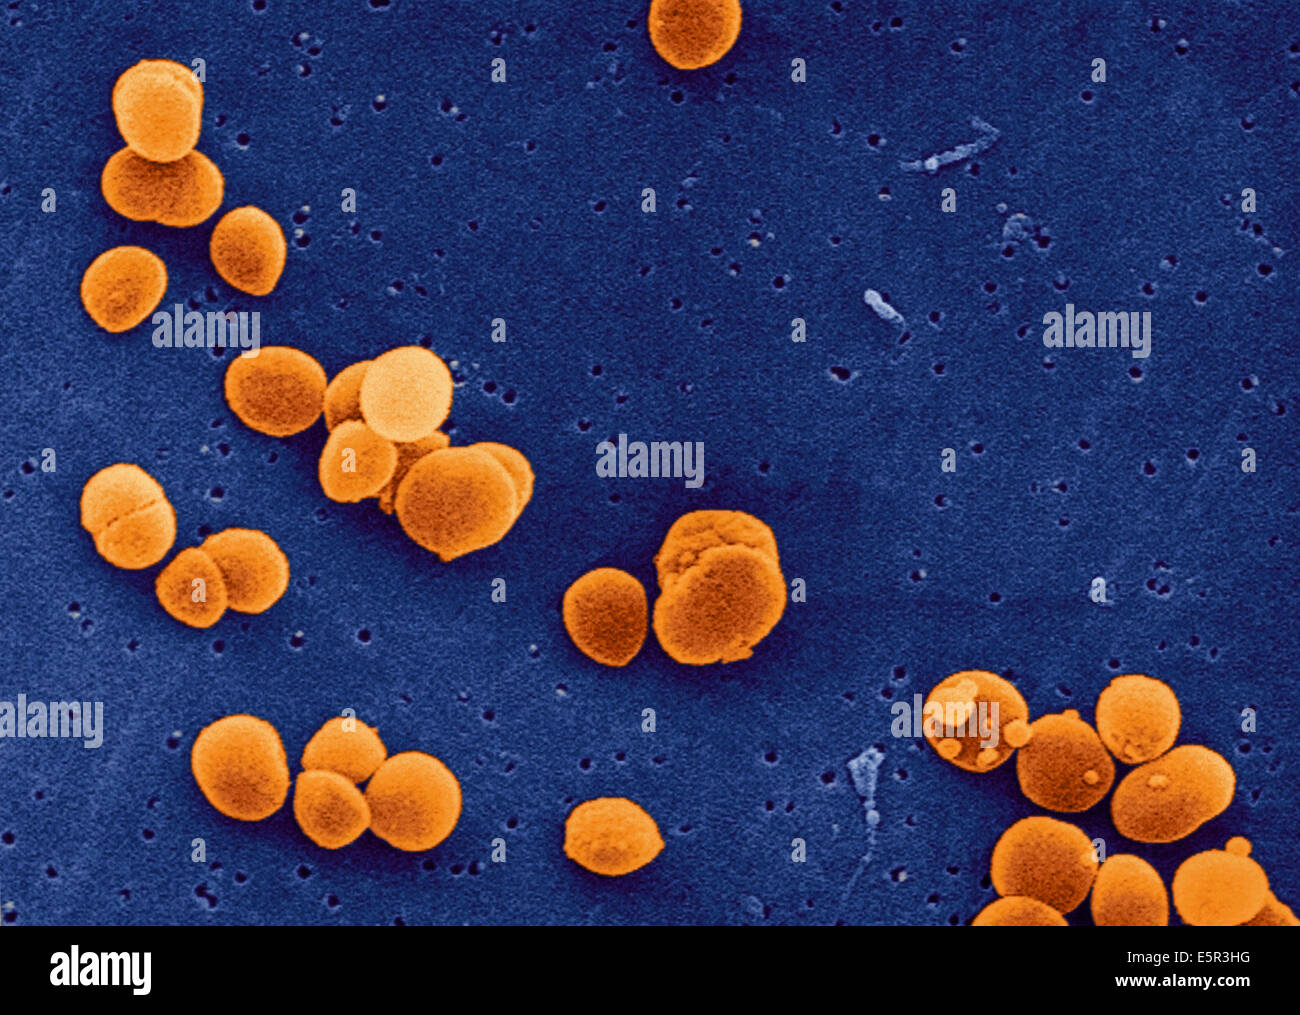 Staphylococcus aureus 10 5. Золотушный стафилококк. Золотистый стафилококк 3. Золотистый стафилококк с10. S. aureus золотистый стафилококк.